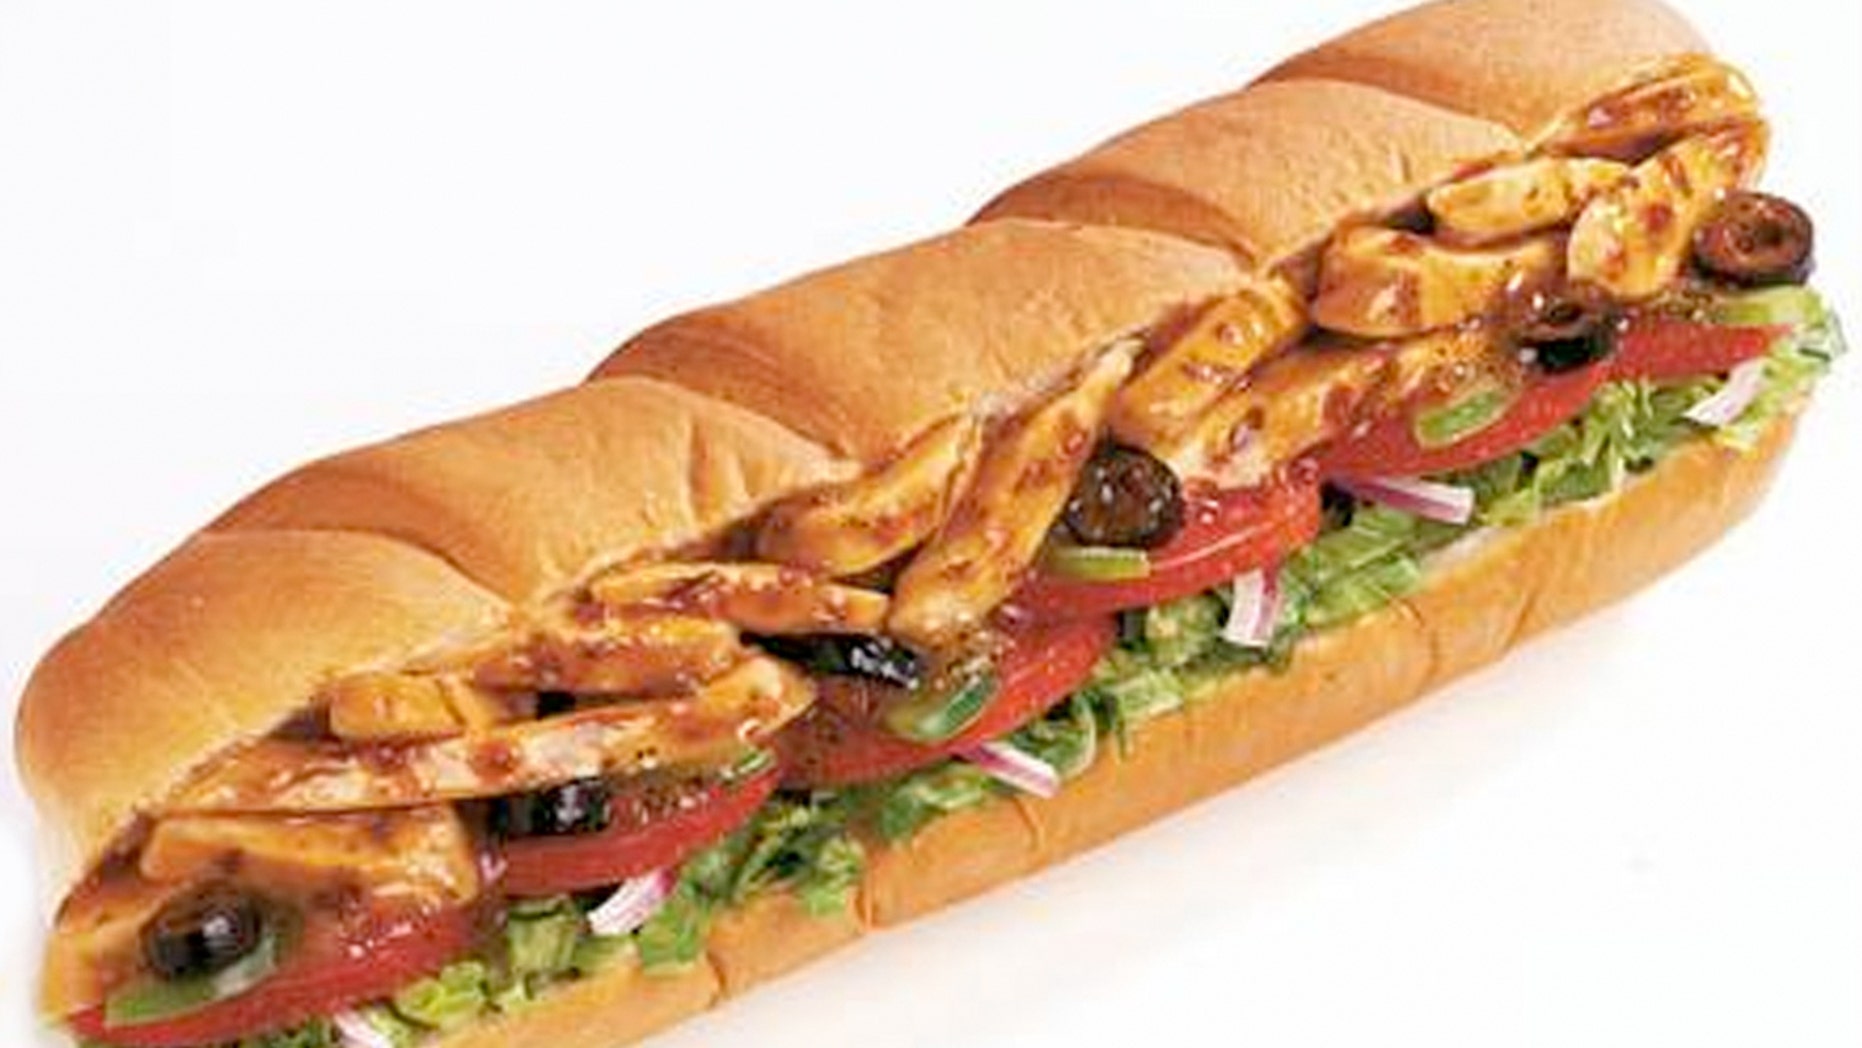 subway-will-now-measure-sandwich-bread-following-footlong-lawsuit